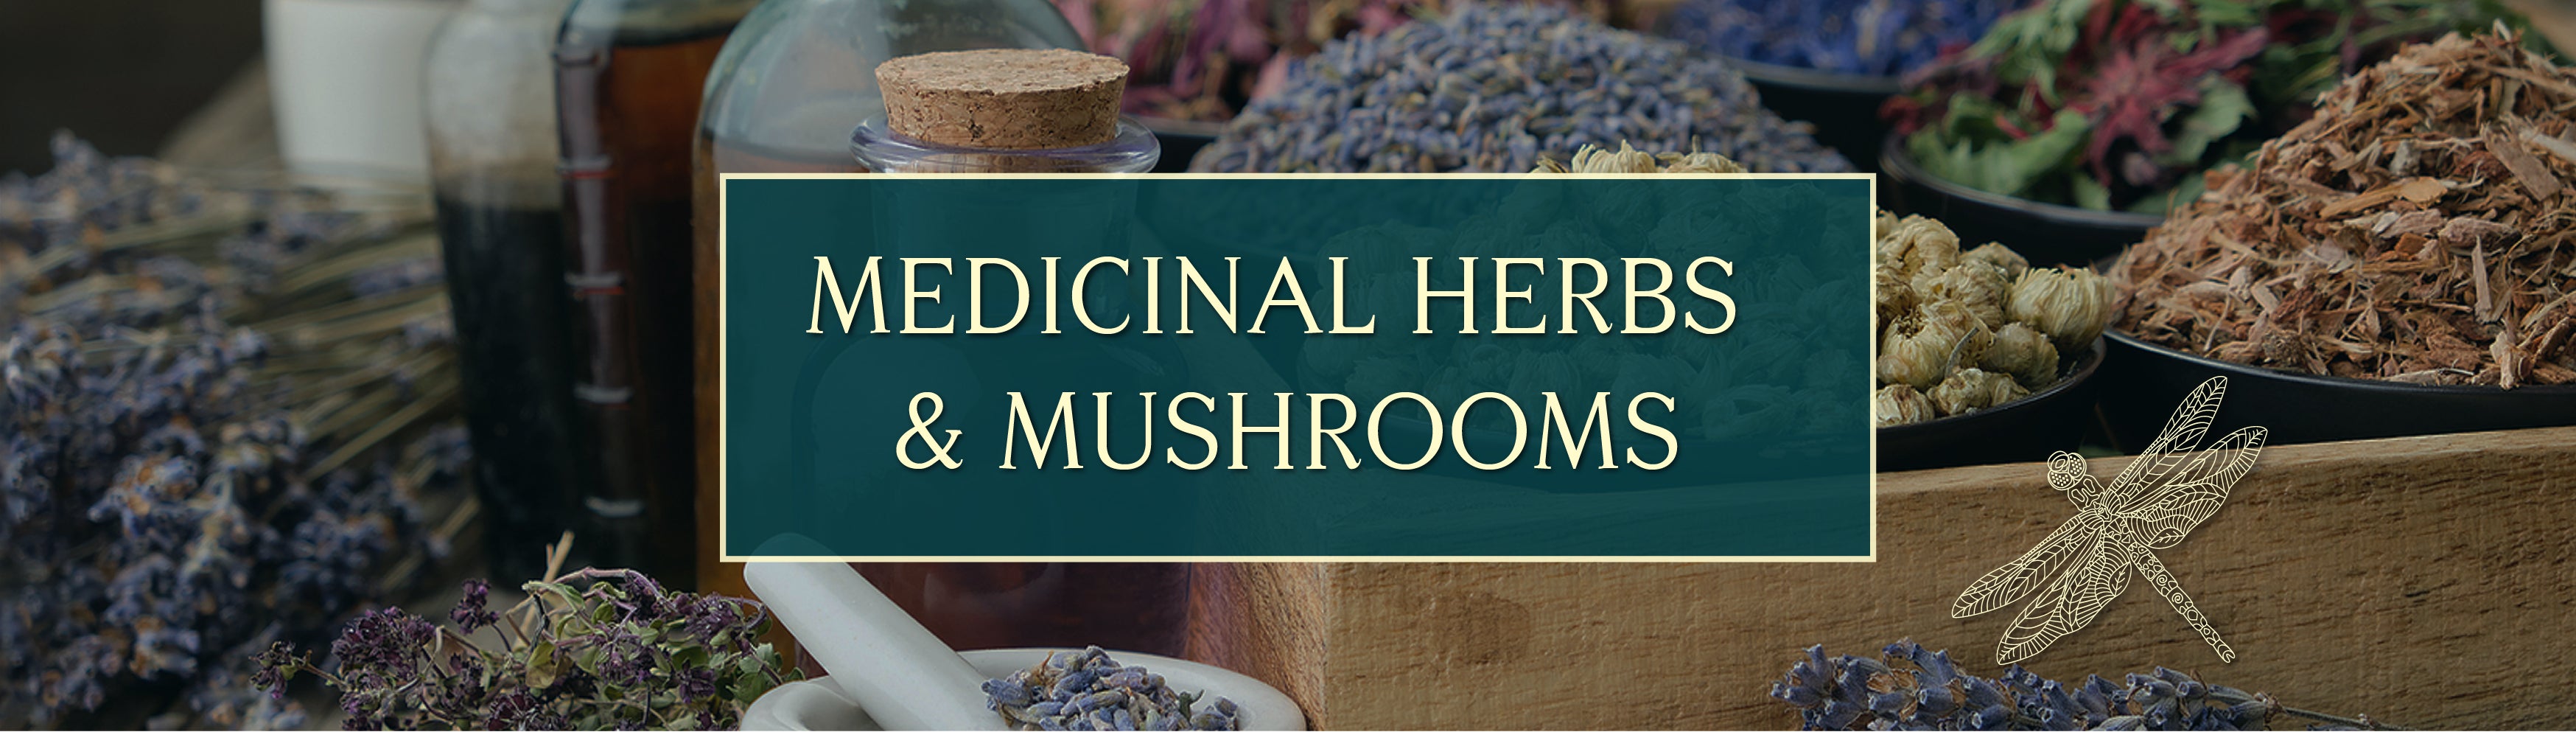 Medicinal Herbs & Mushrooms - Dragonfly Herbs